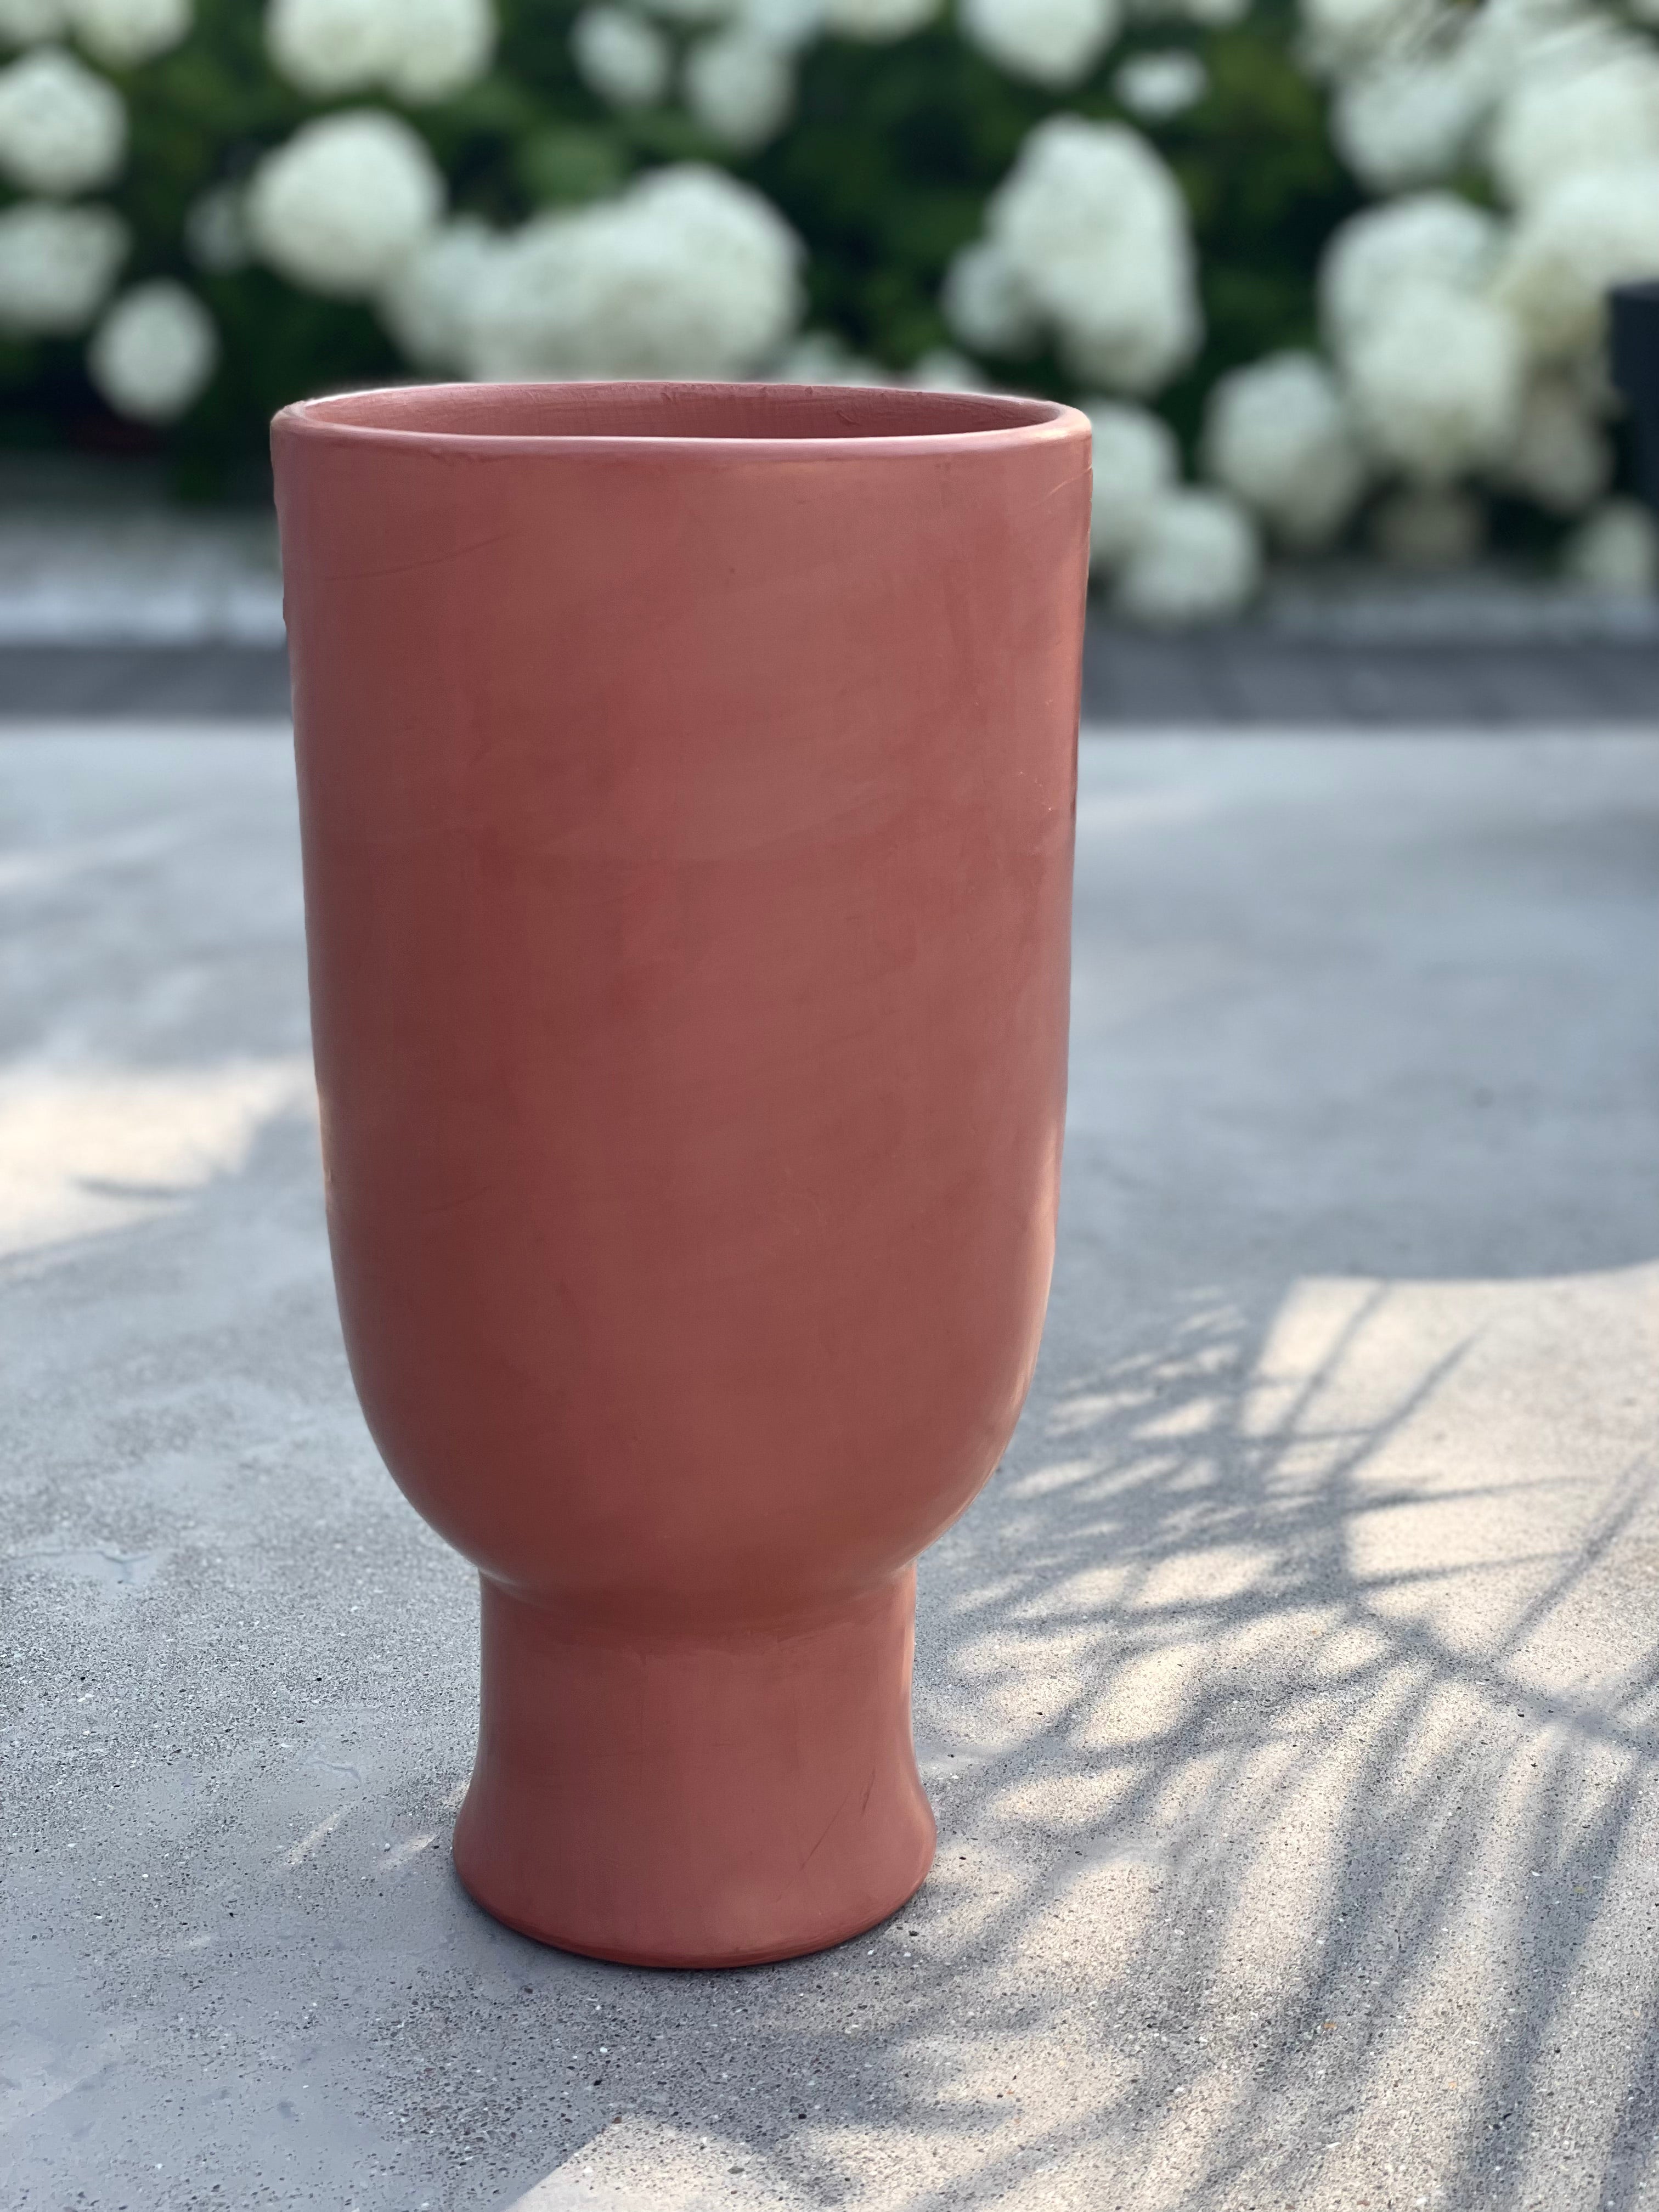 Tadelakt fruit bowl/vase - terracotta